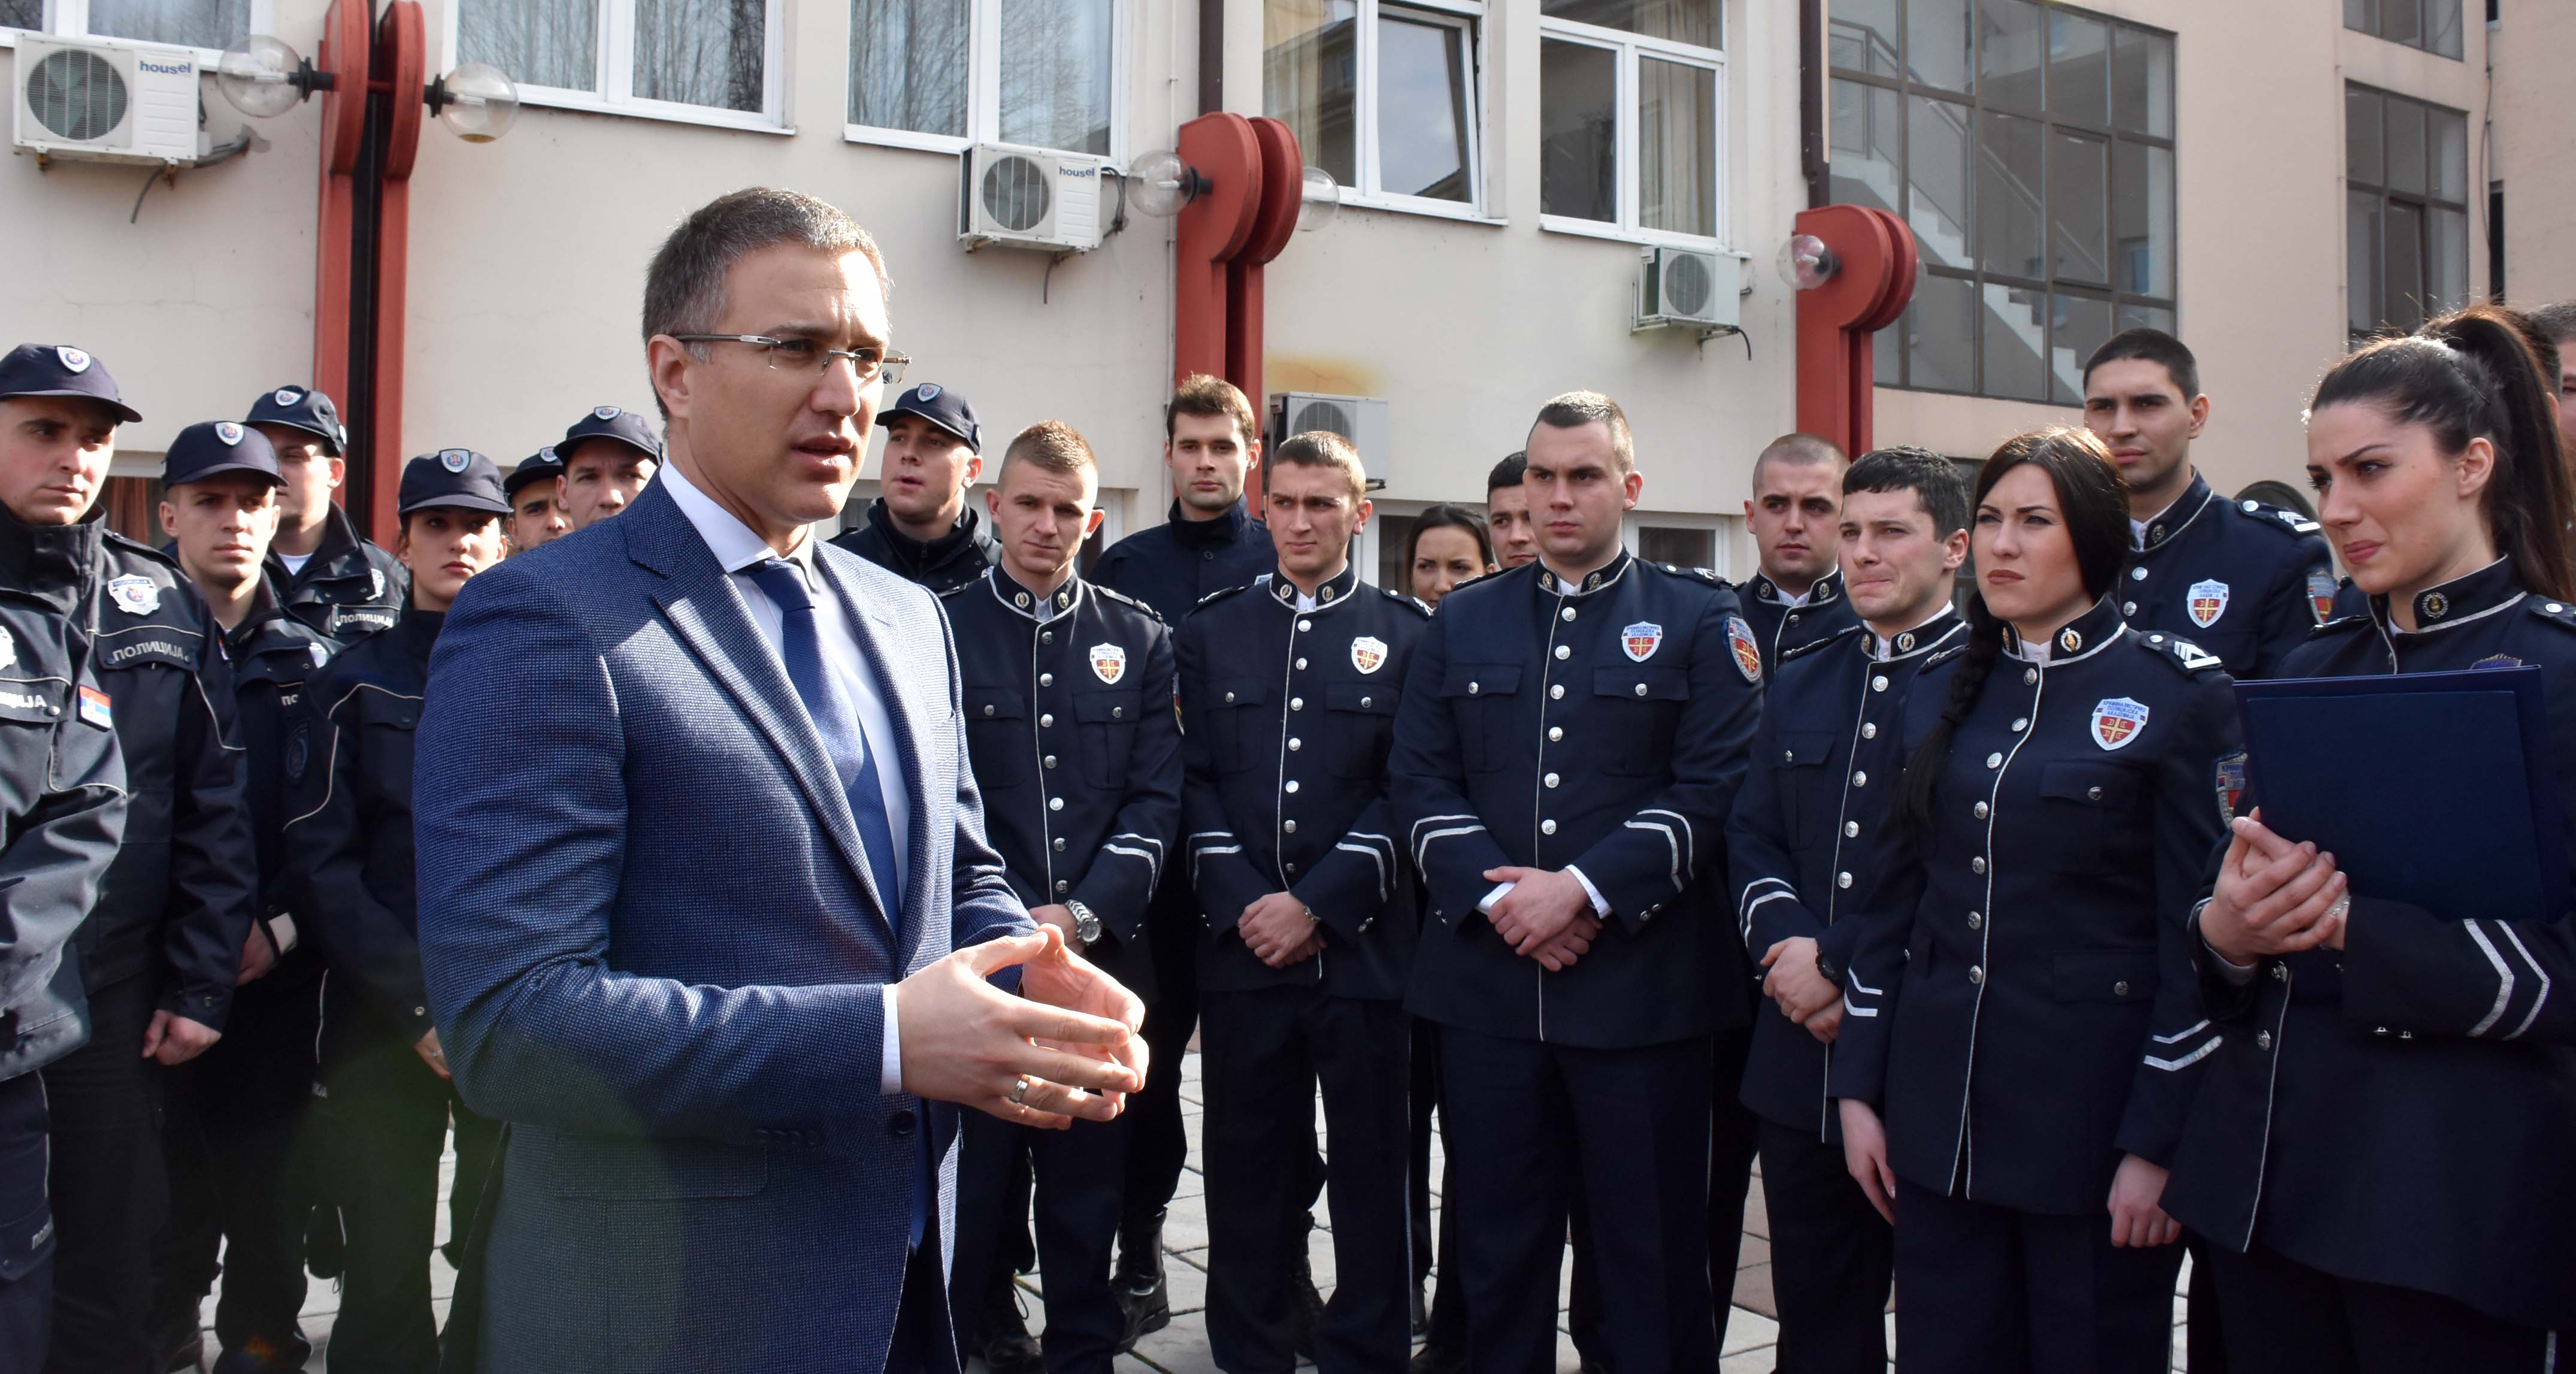 Стефановић: У 2017. години запослили смо скоро 400 дипломаца Криминалистичко-полицијске академије